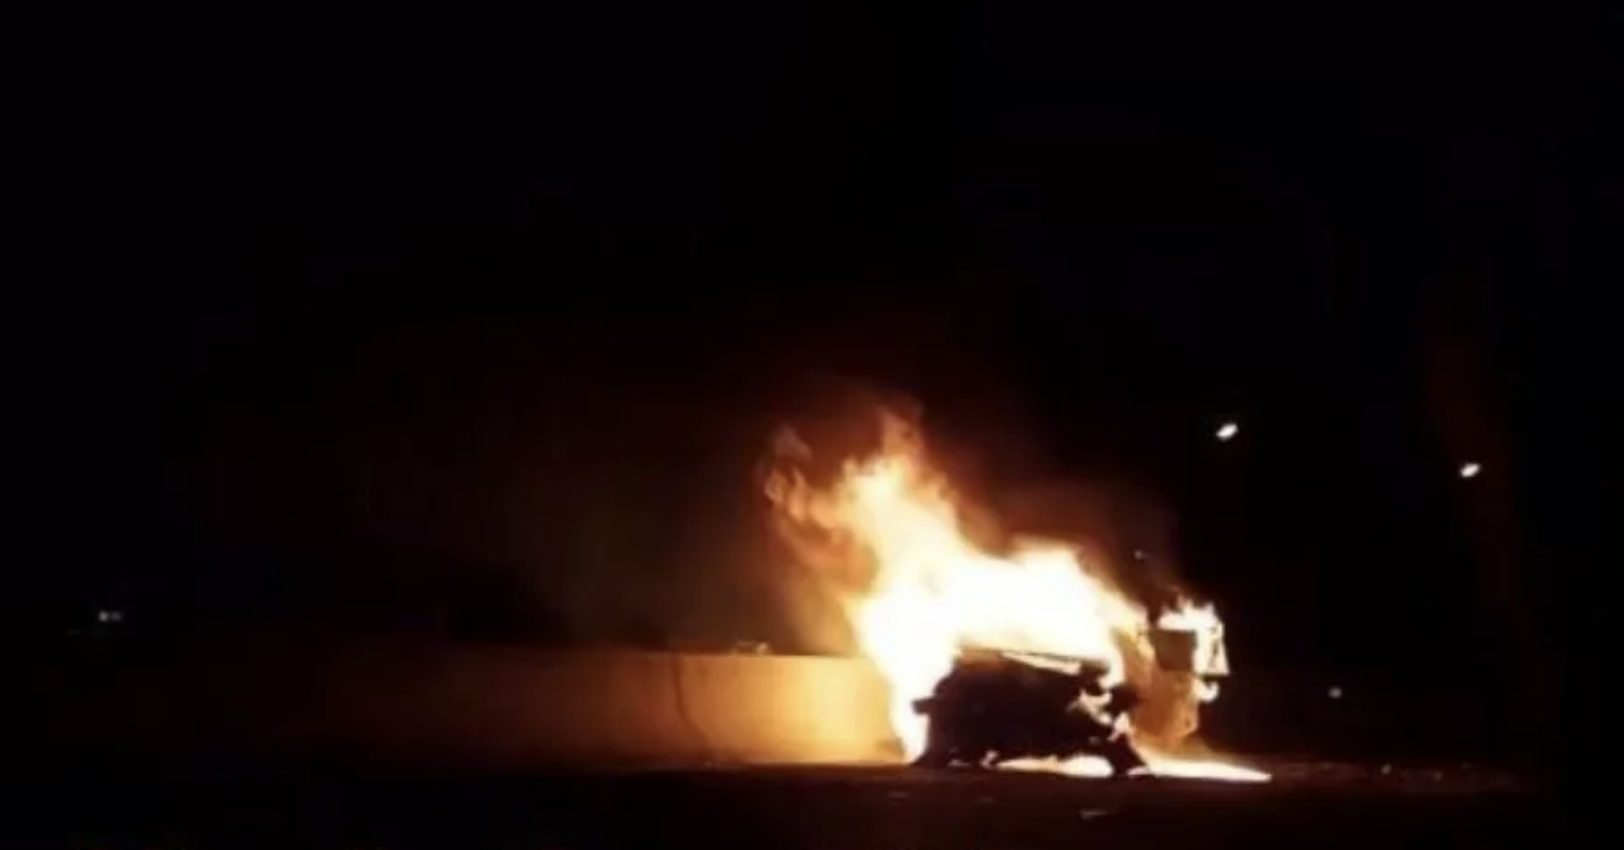 Τραγωδία στην Αθηνών – Κορίνθου: Κάηκε οδηγός μέσα στο αυτοκίνητό του